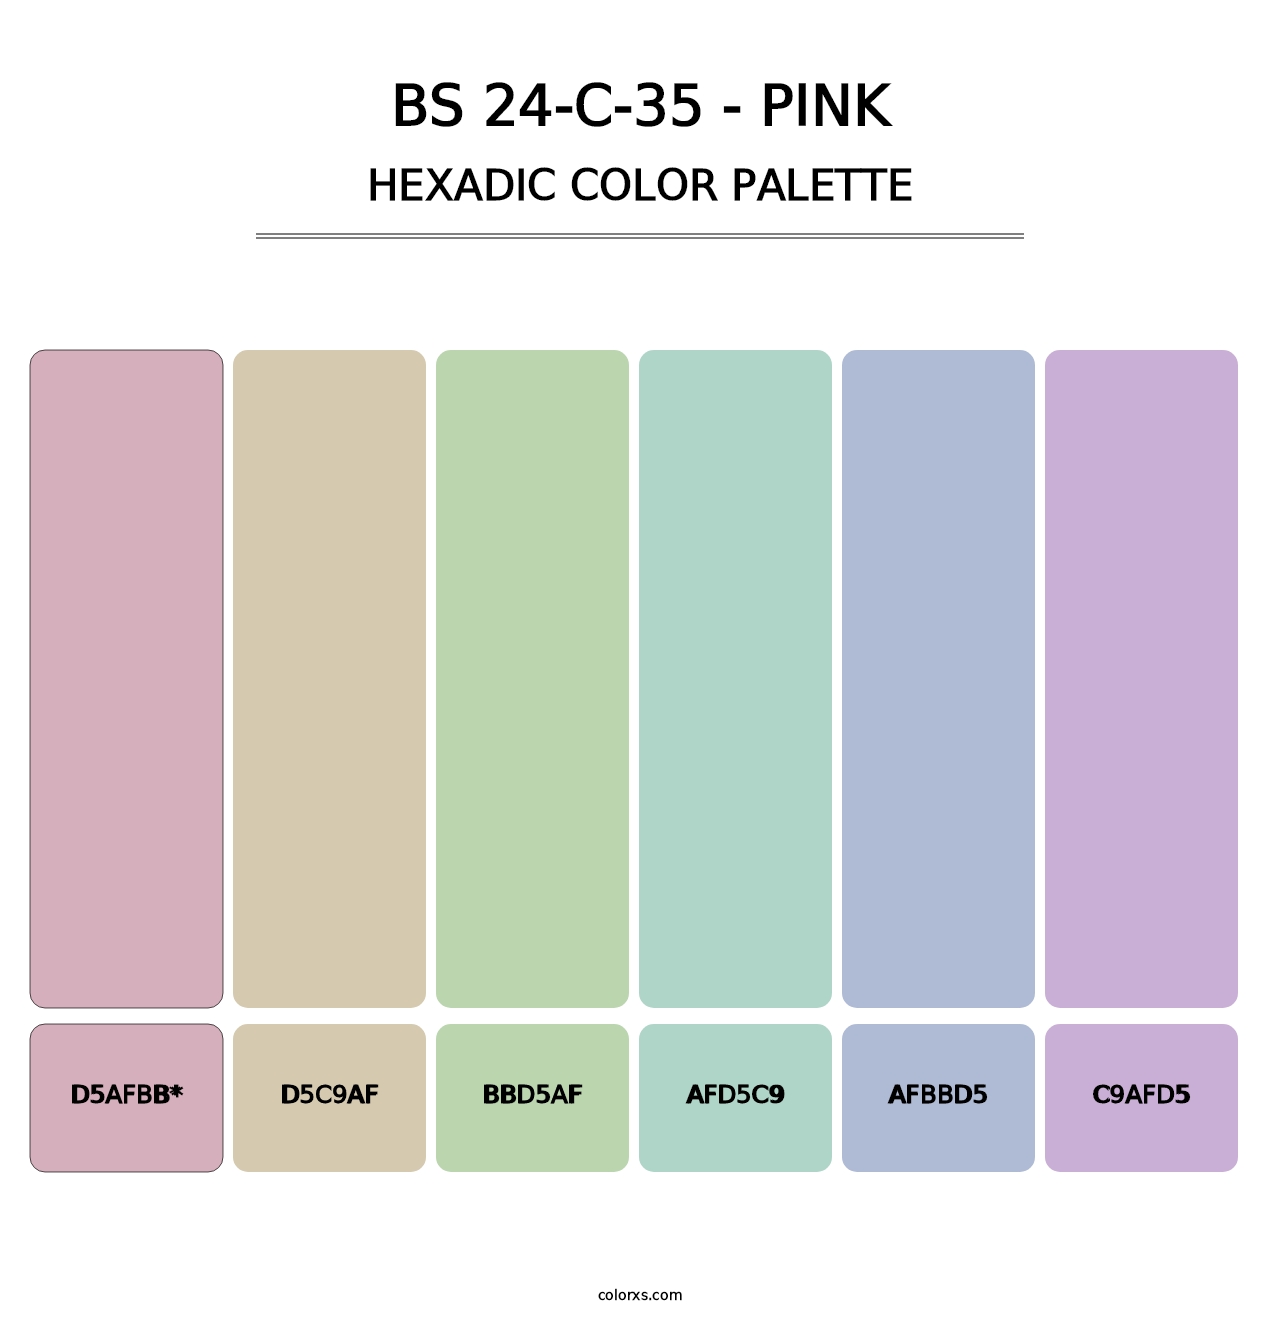 BS 24-C-35 - Pink - Hexadic Color Palette